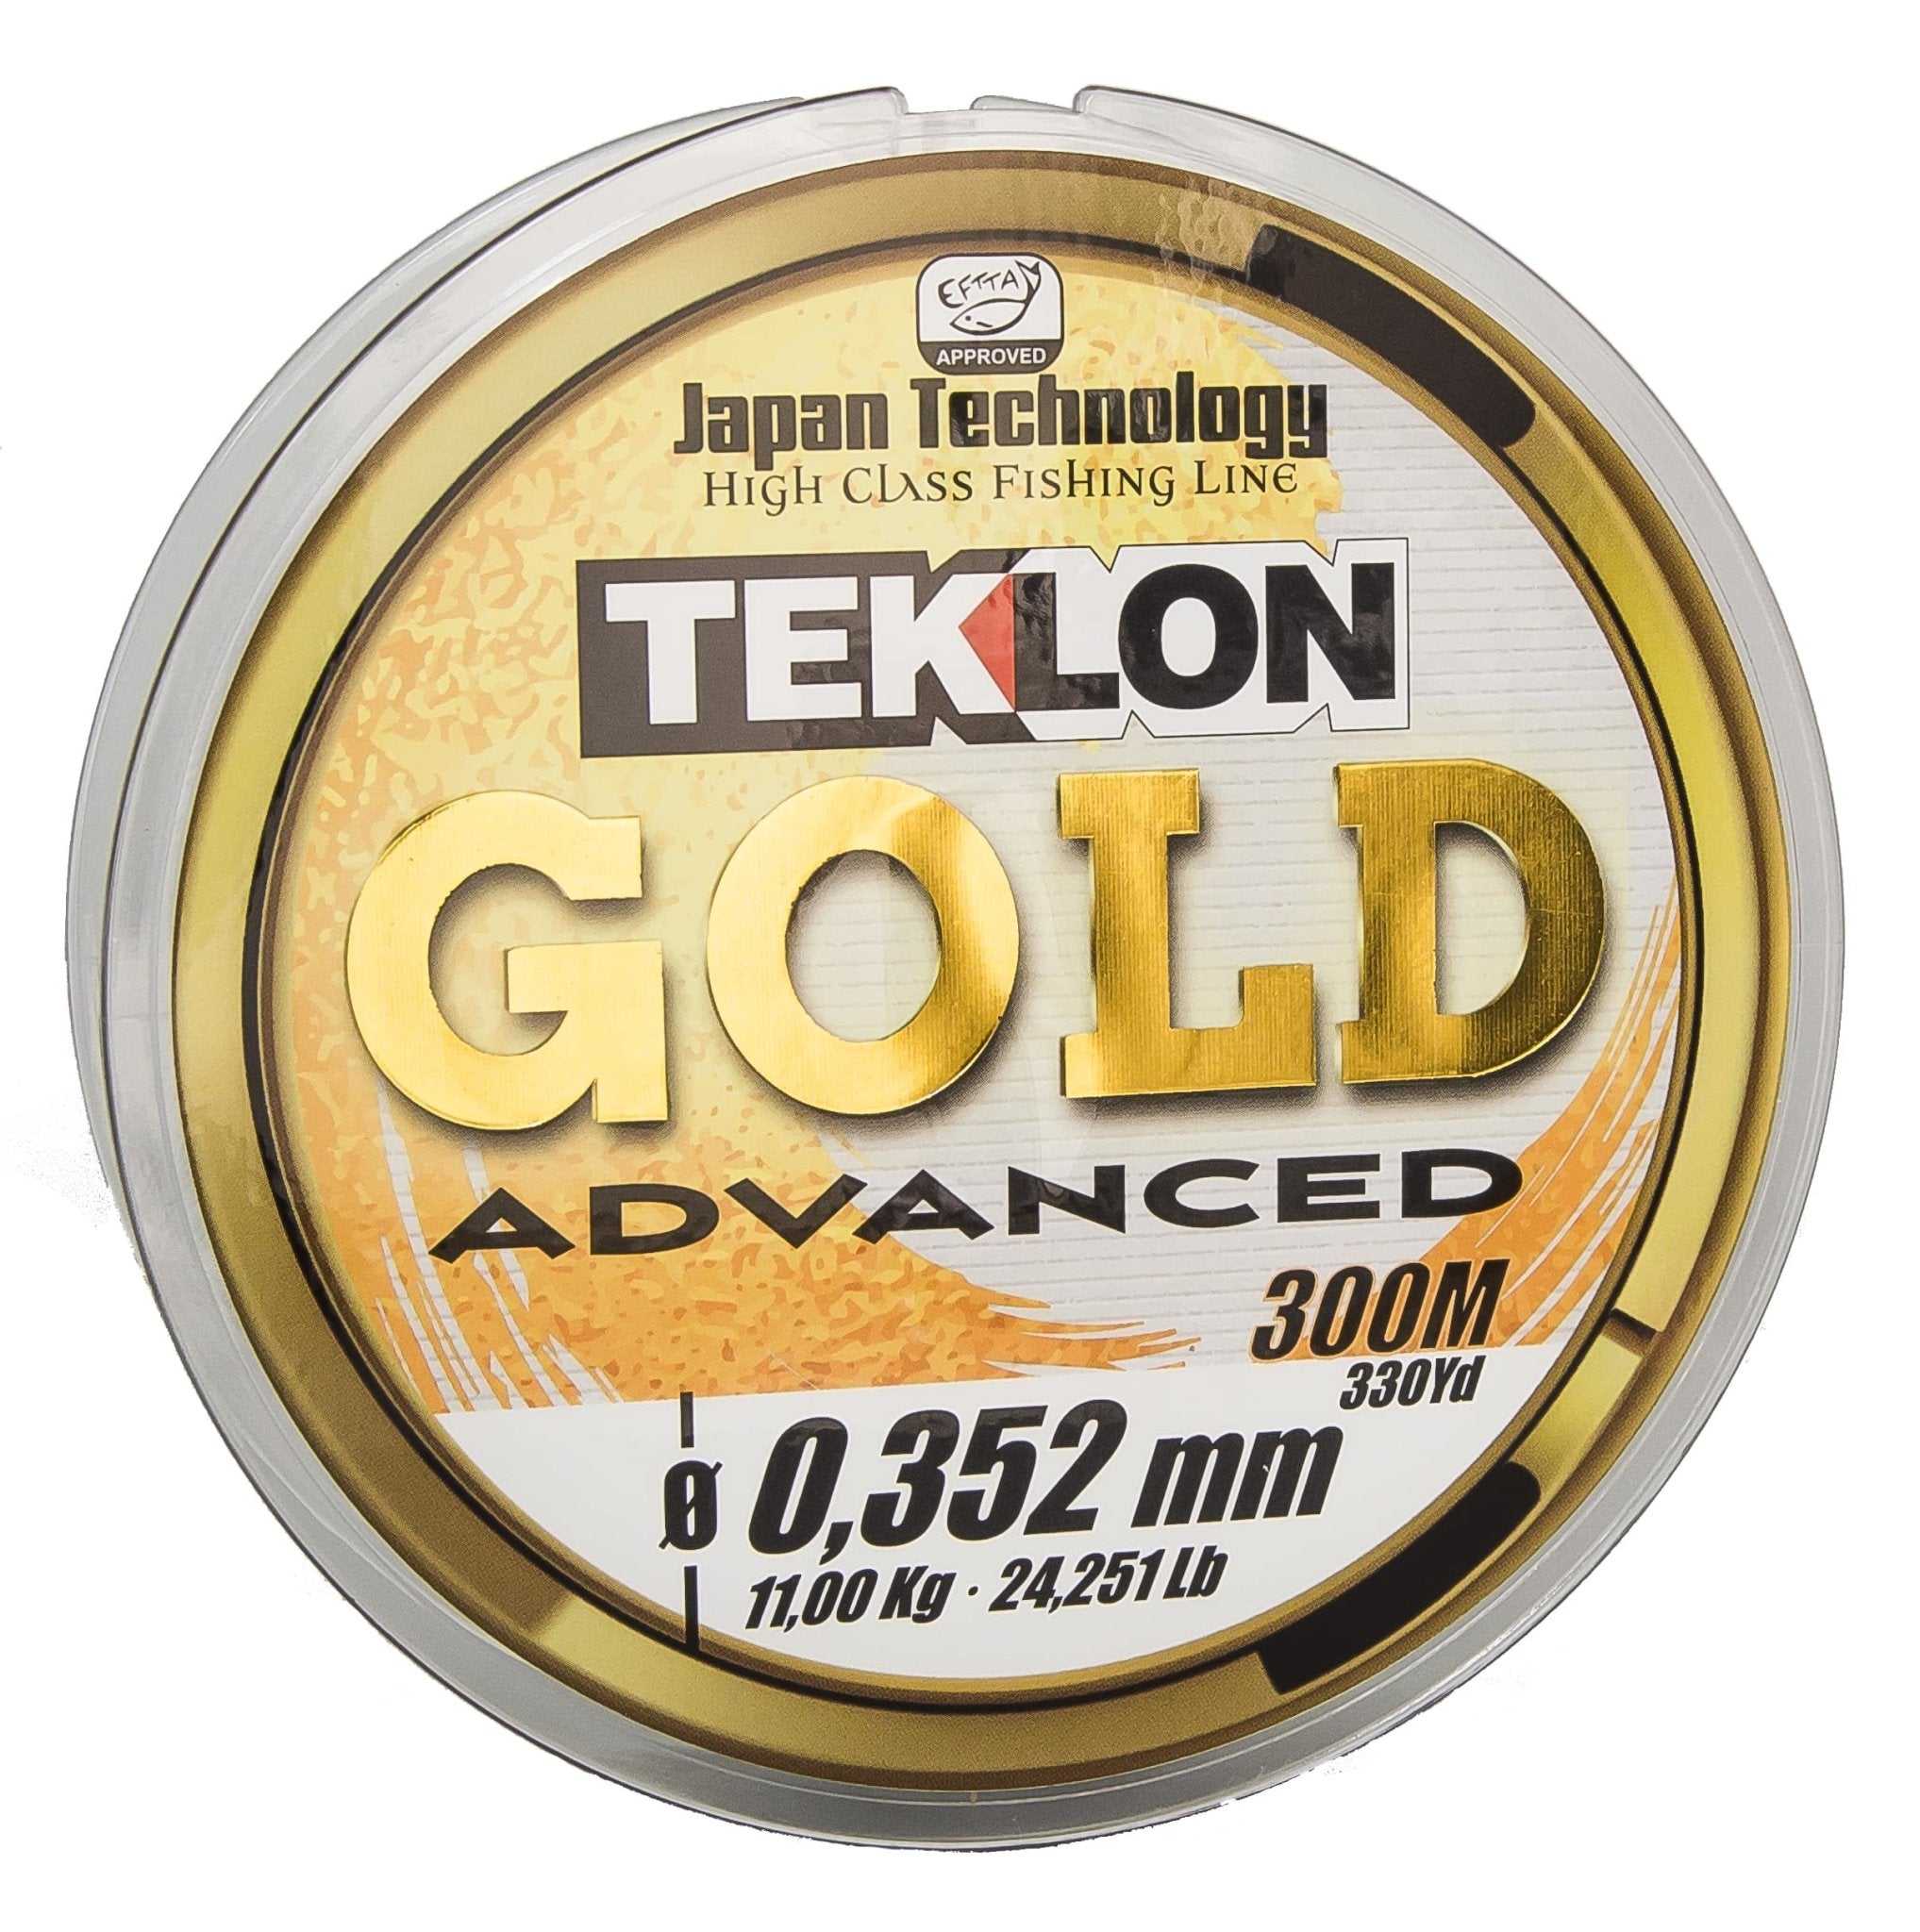 Hilo de pesca Teklon Gold Advanced 300 mts. - Grauvell